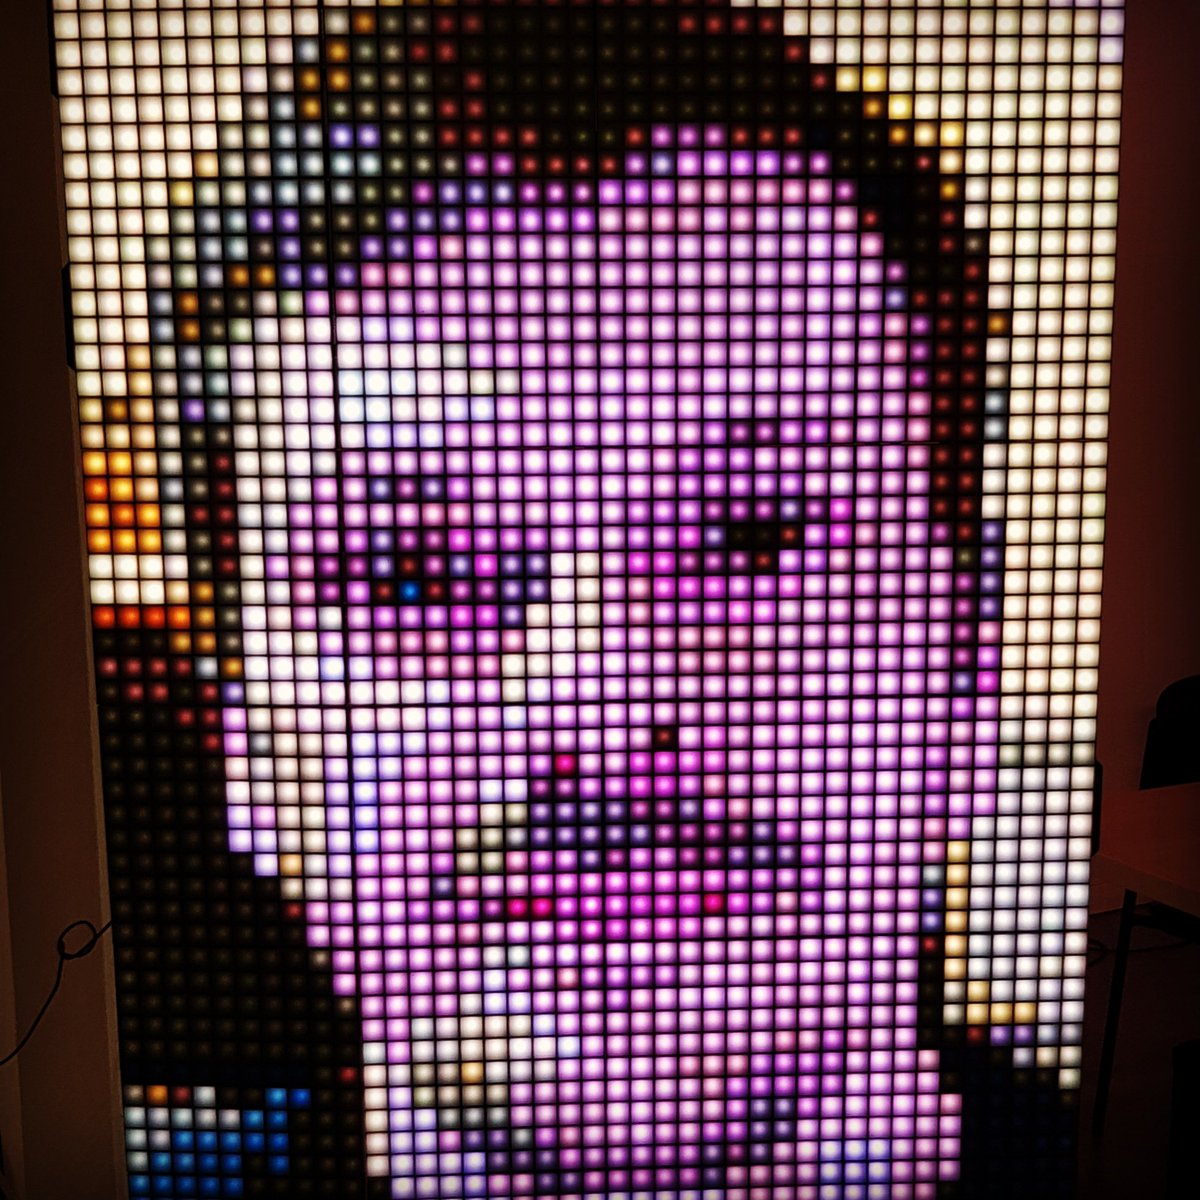 Led S Chat Premier Essai Du Pixelbooth By Led S Chat La Borne A Selfie Pixel Art Pixelart Digitalart Selfie Photobooth Led Mozaik T Co Bkloz4jfce